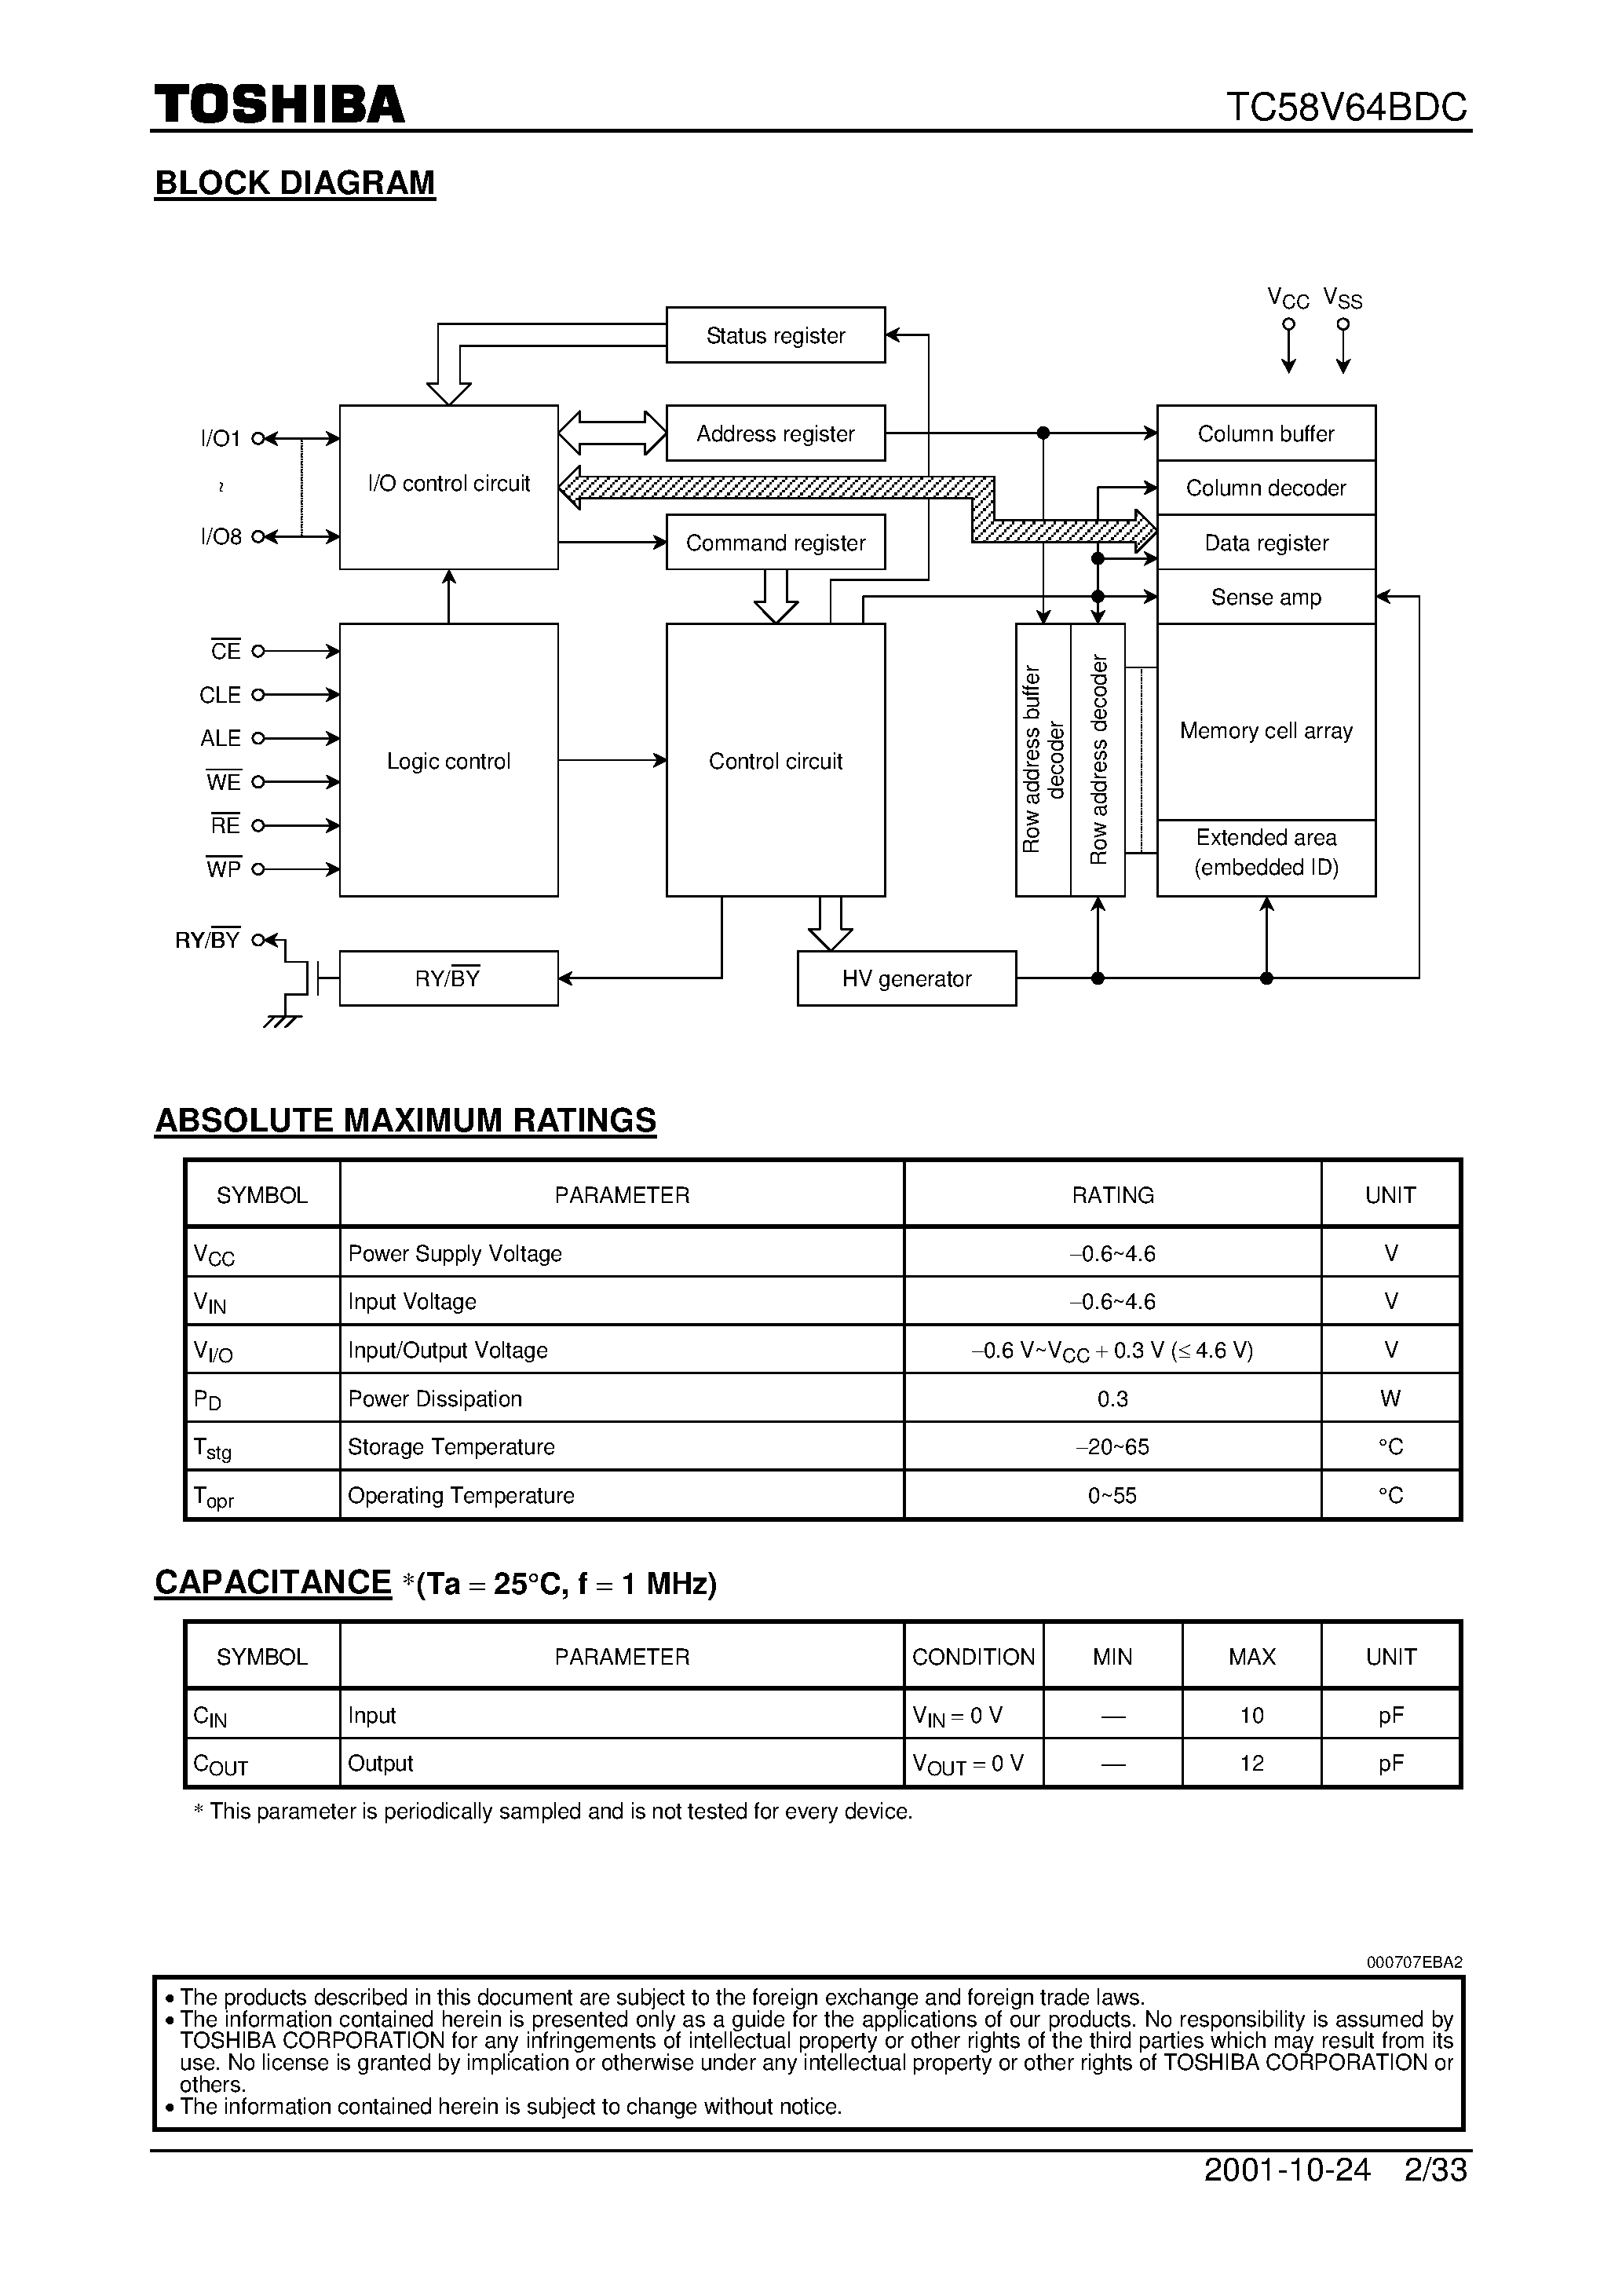 Даташит TC58V64BDC - 64M-Bit CMOS NAND EPROM страница 2